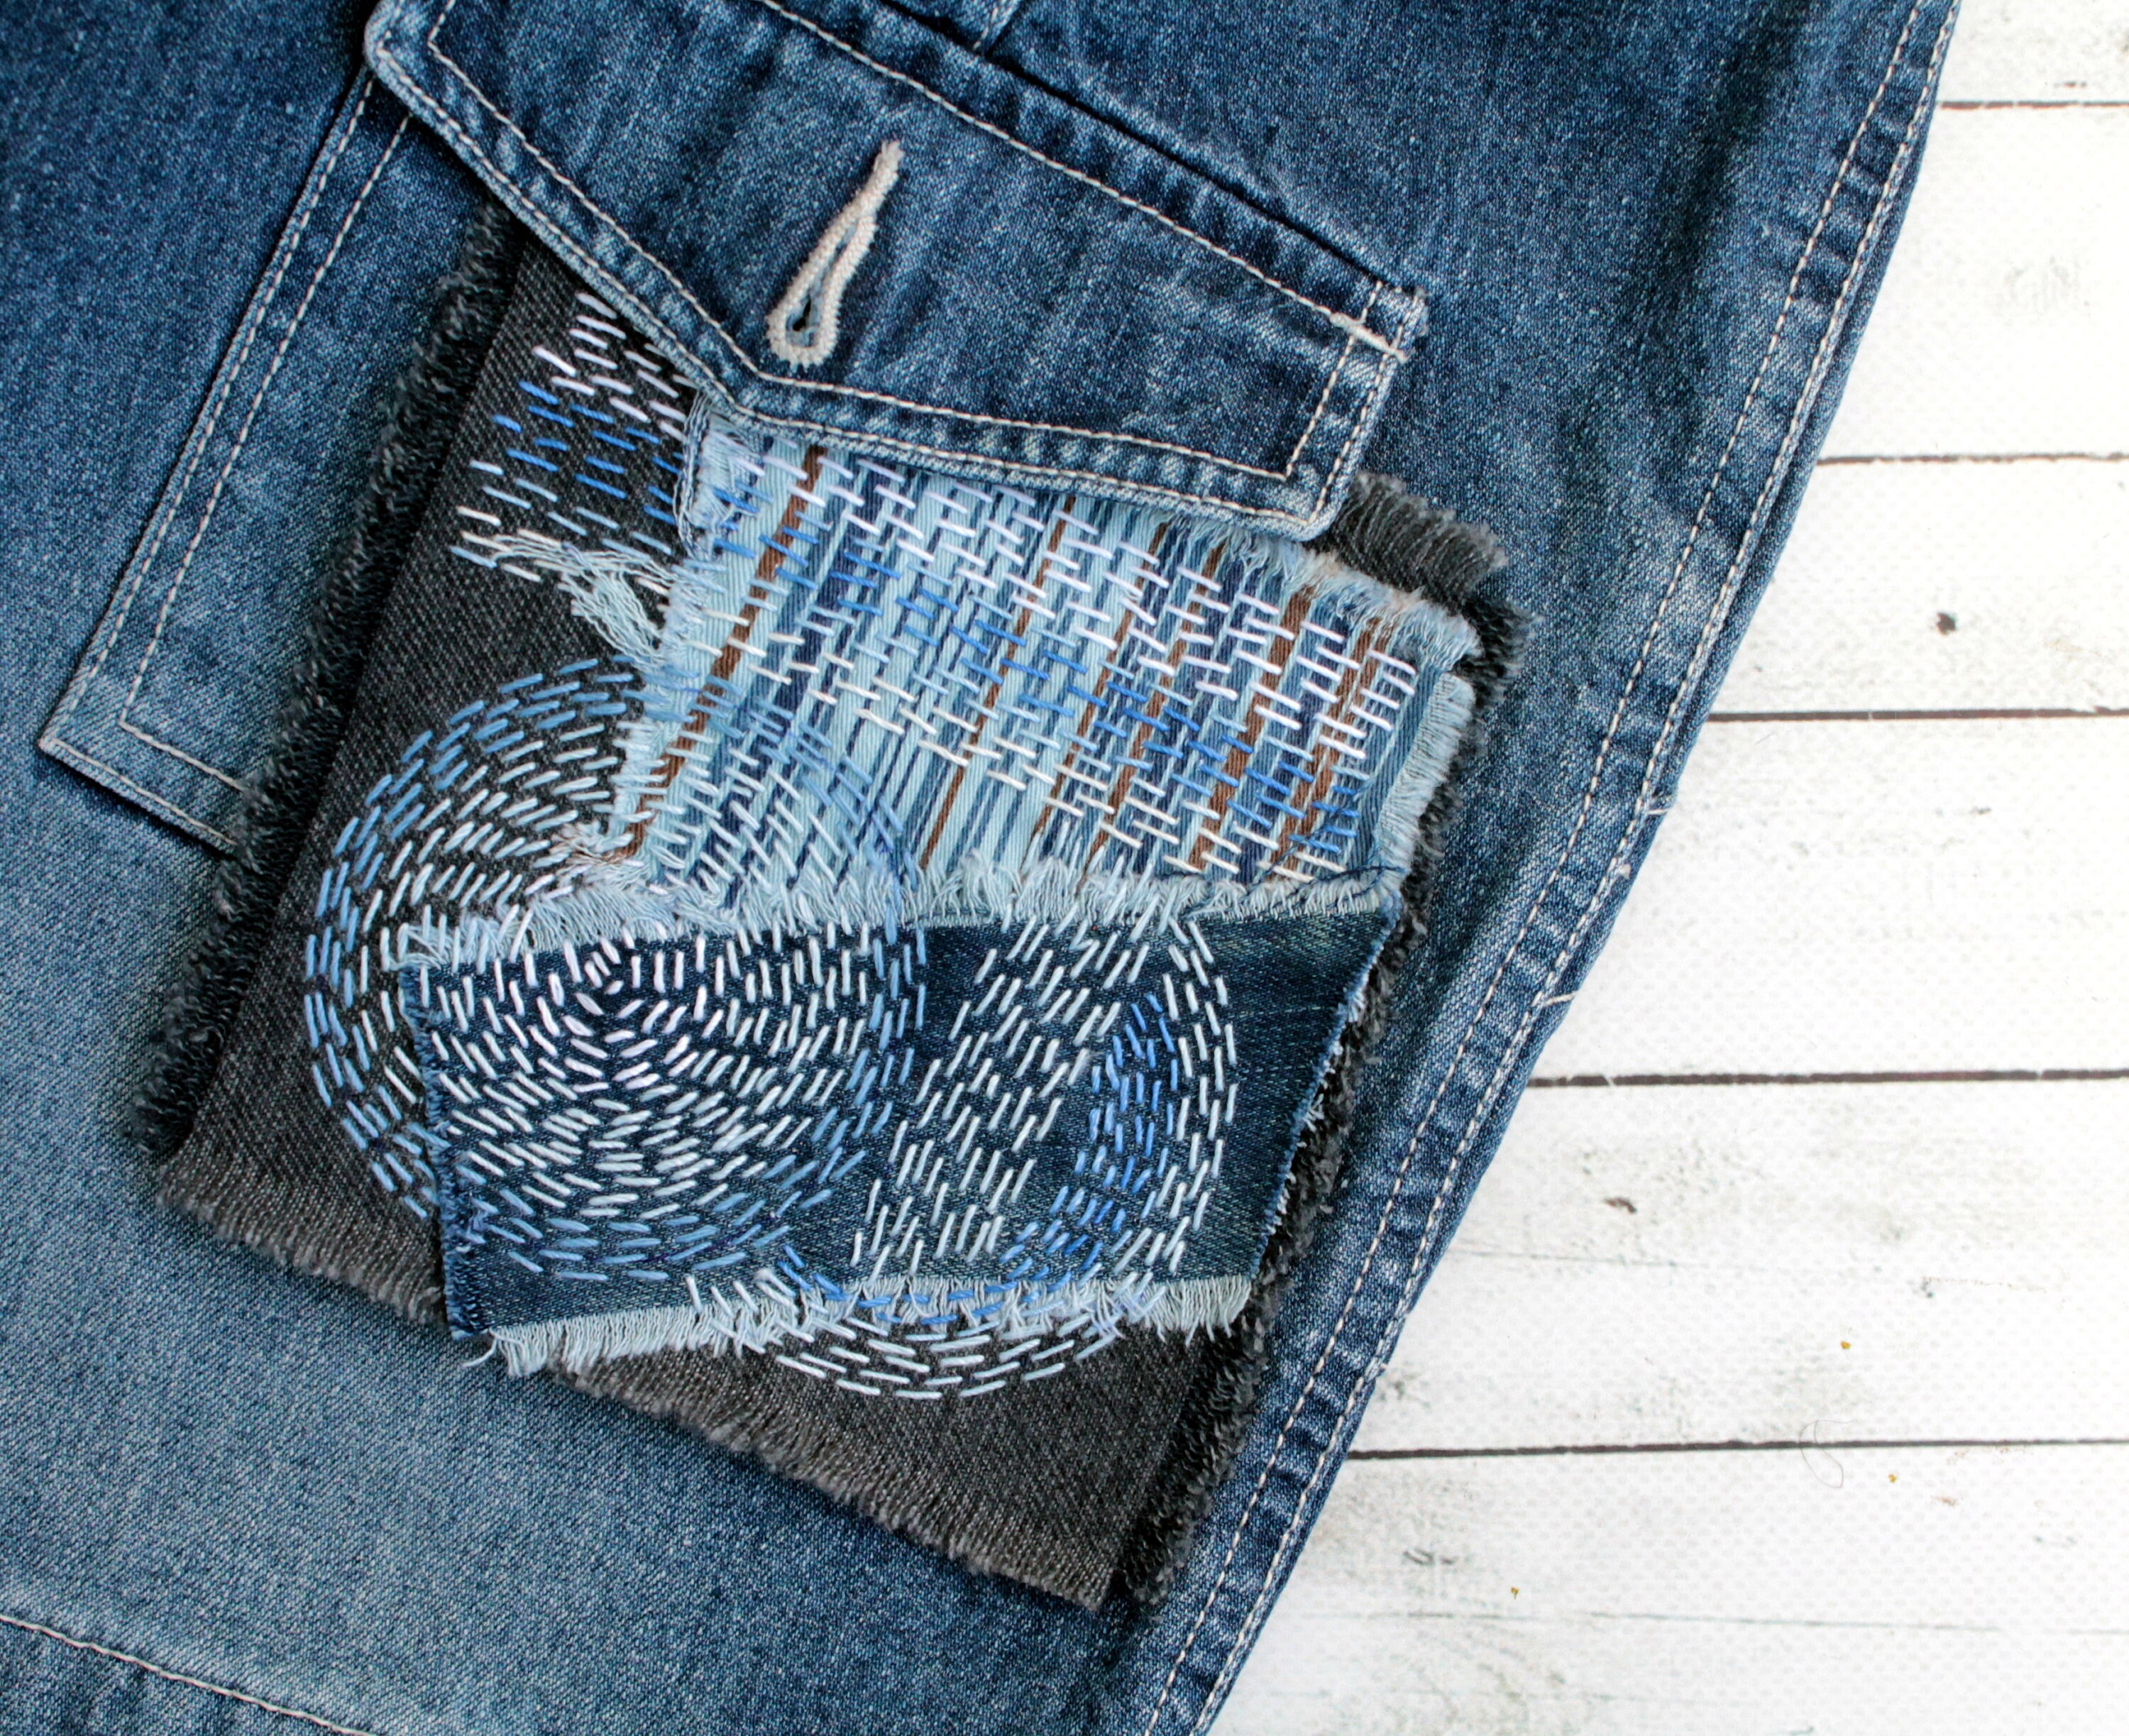 Denim Boro Patch Sashiko Stitching Upcycled Quilt Visible - Etsy